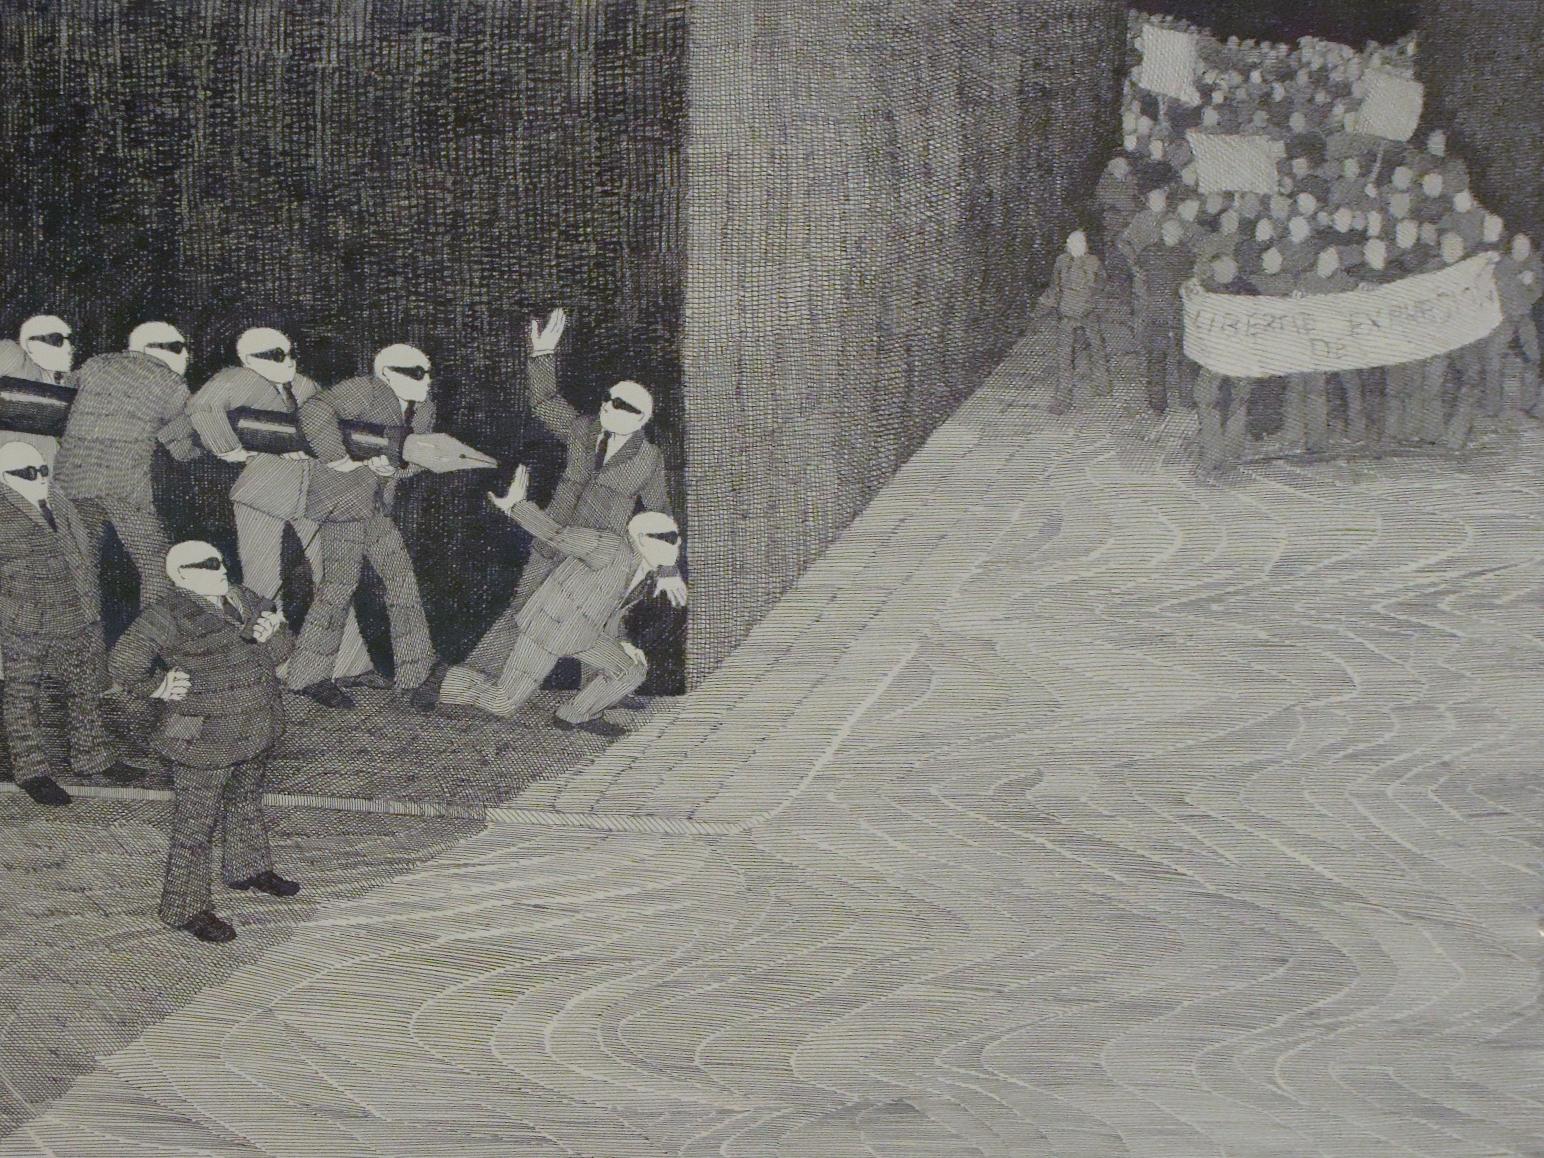 Dibujo en blanco y negro de un grupo de manifestantes y otro grupo de hombres esperándolos tras un muro